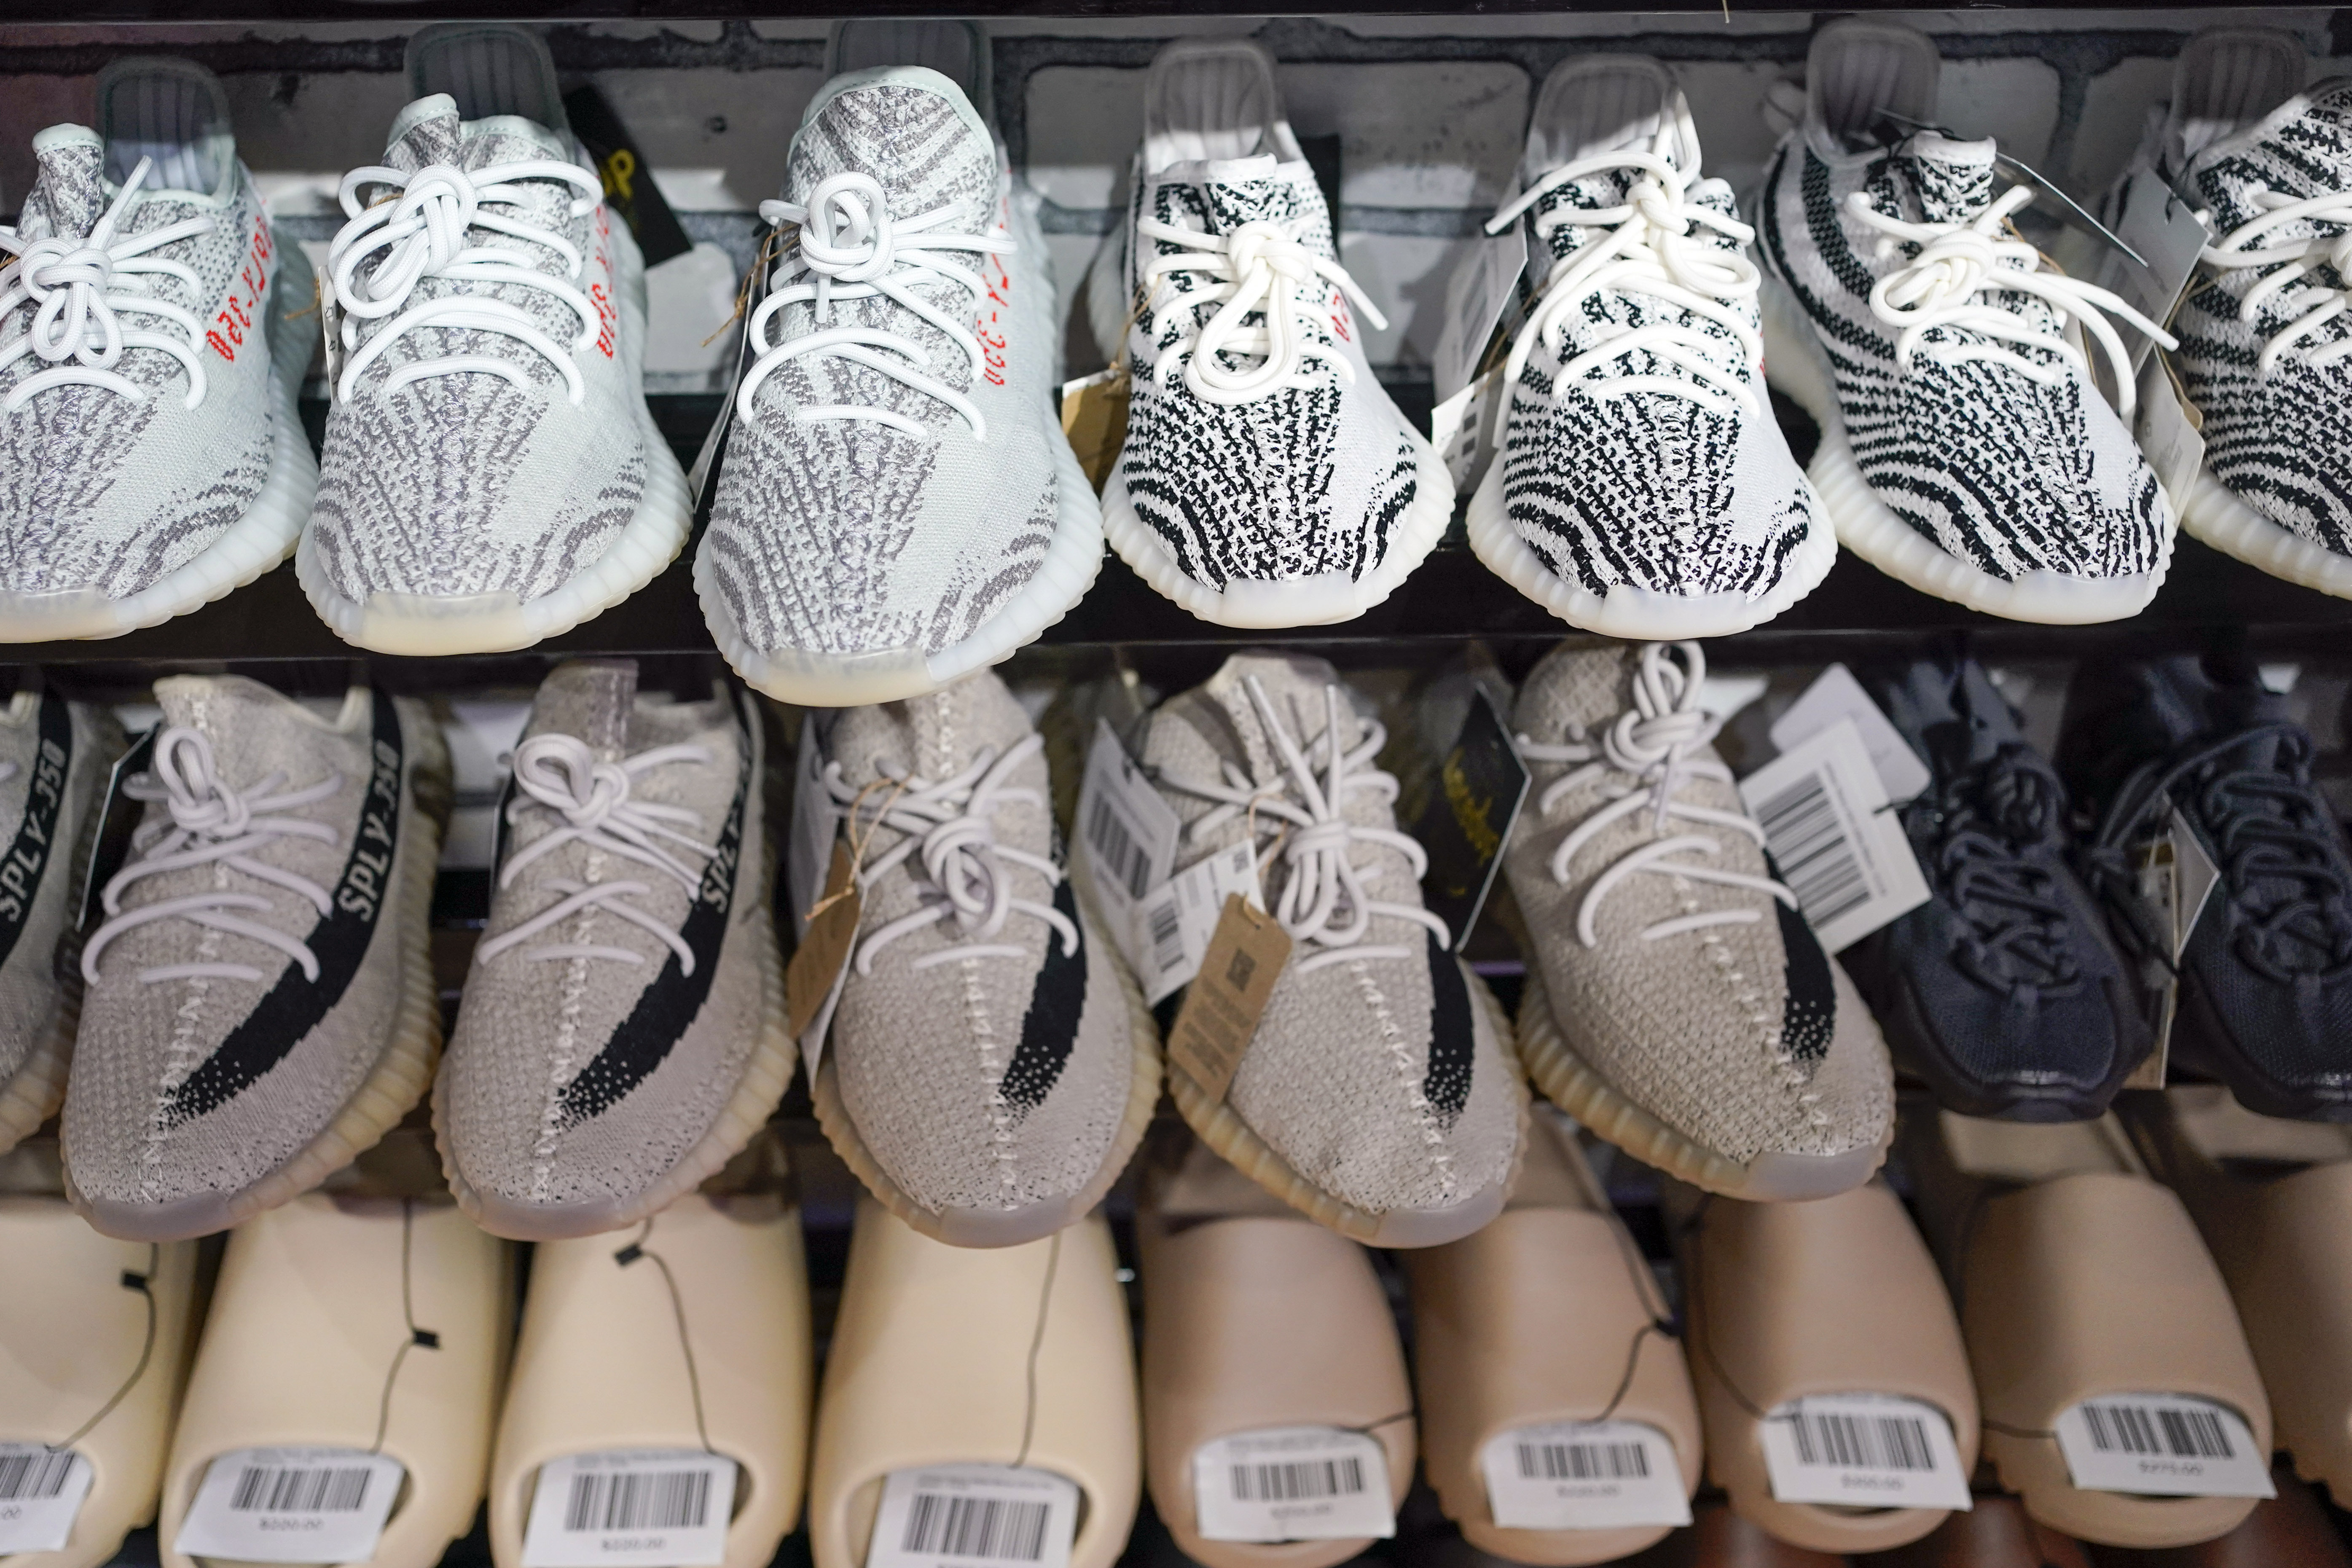 Adidas geht nun davon aus, den Rest seines Yeezy-Vorrats zum Selbstkostenpreis zu verkaufen